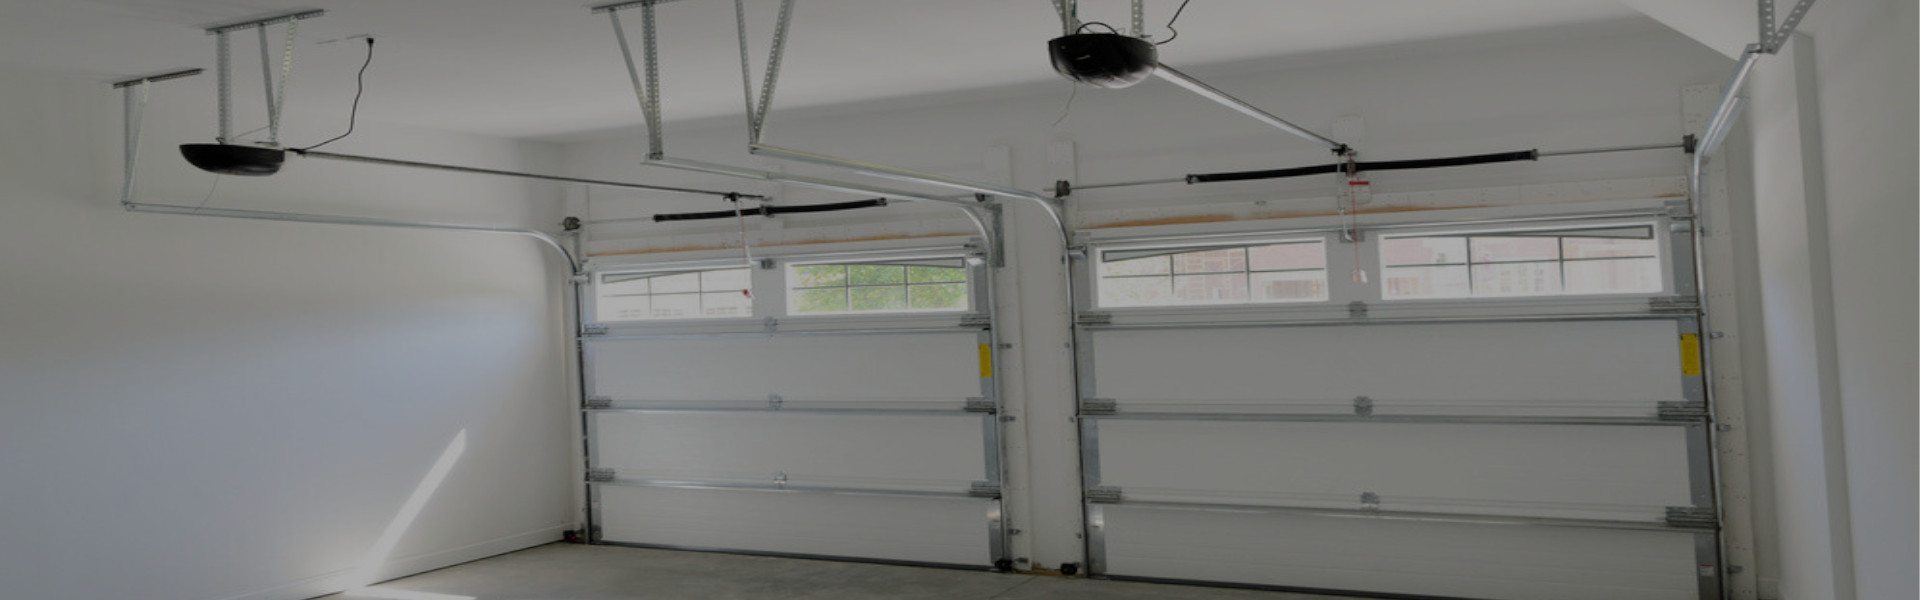 Slider Garage Door Repair, Glaziers in Hackney, Homerton, E9